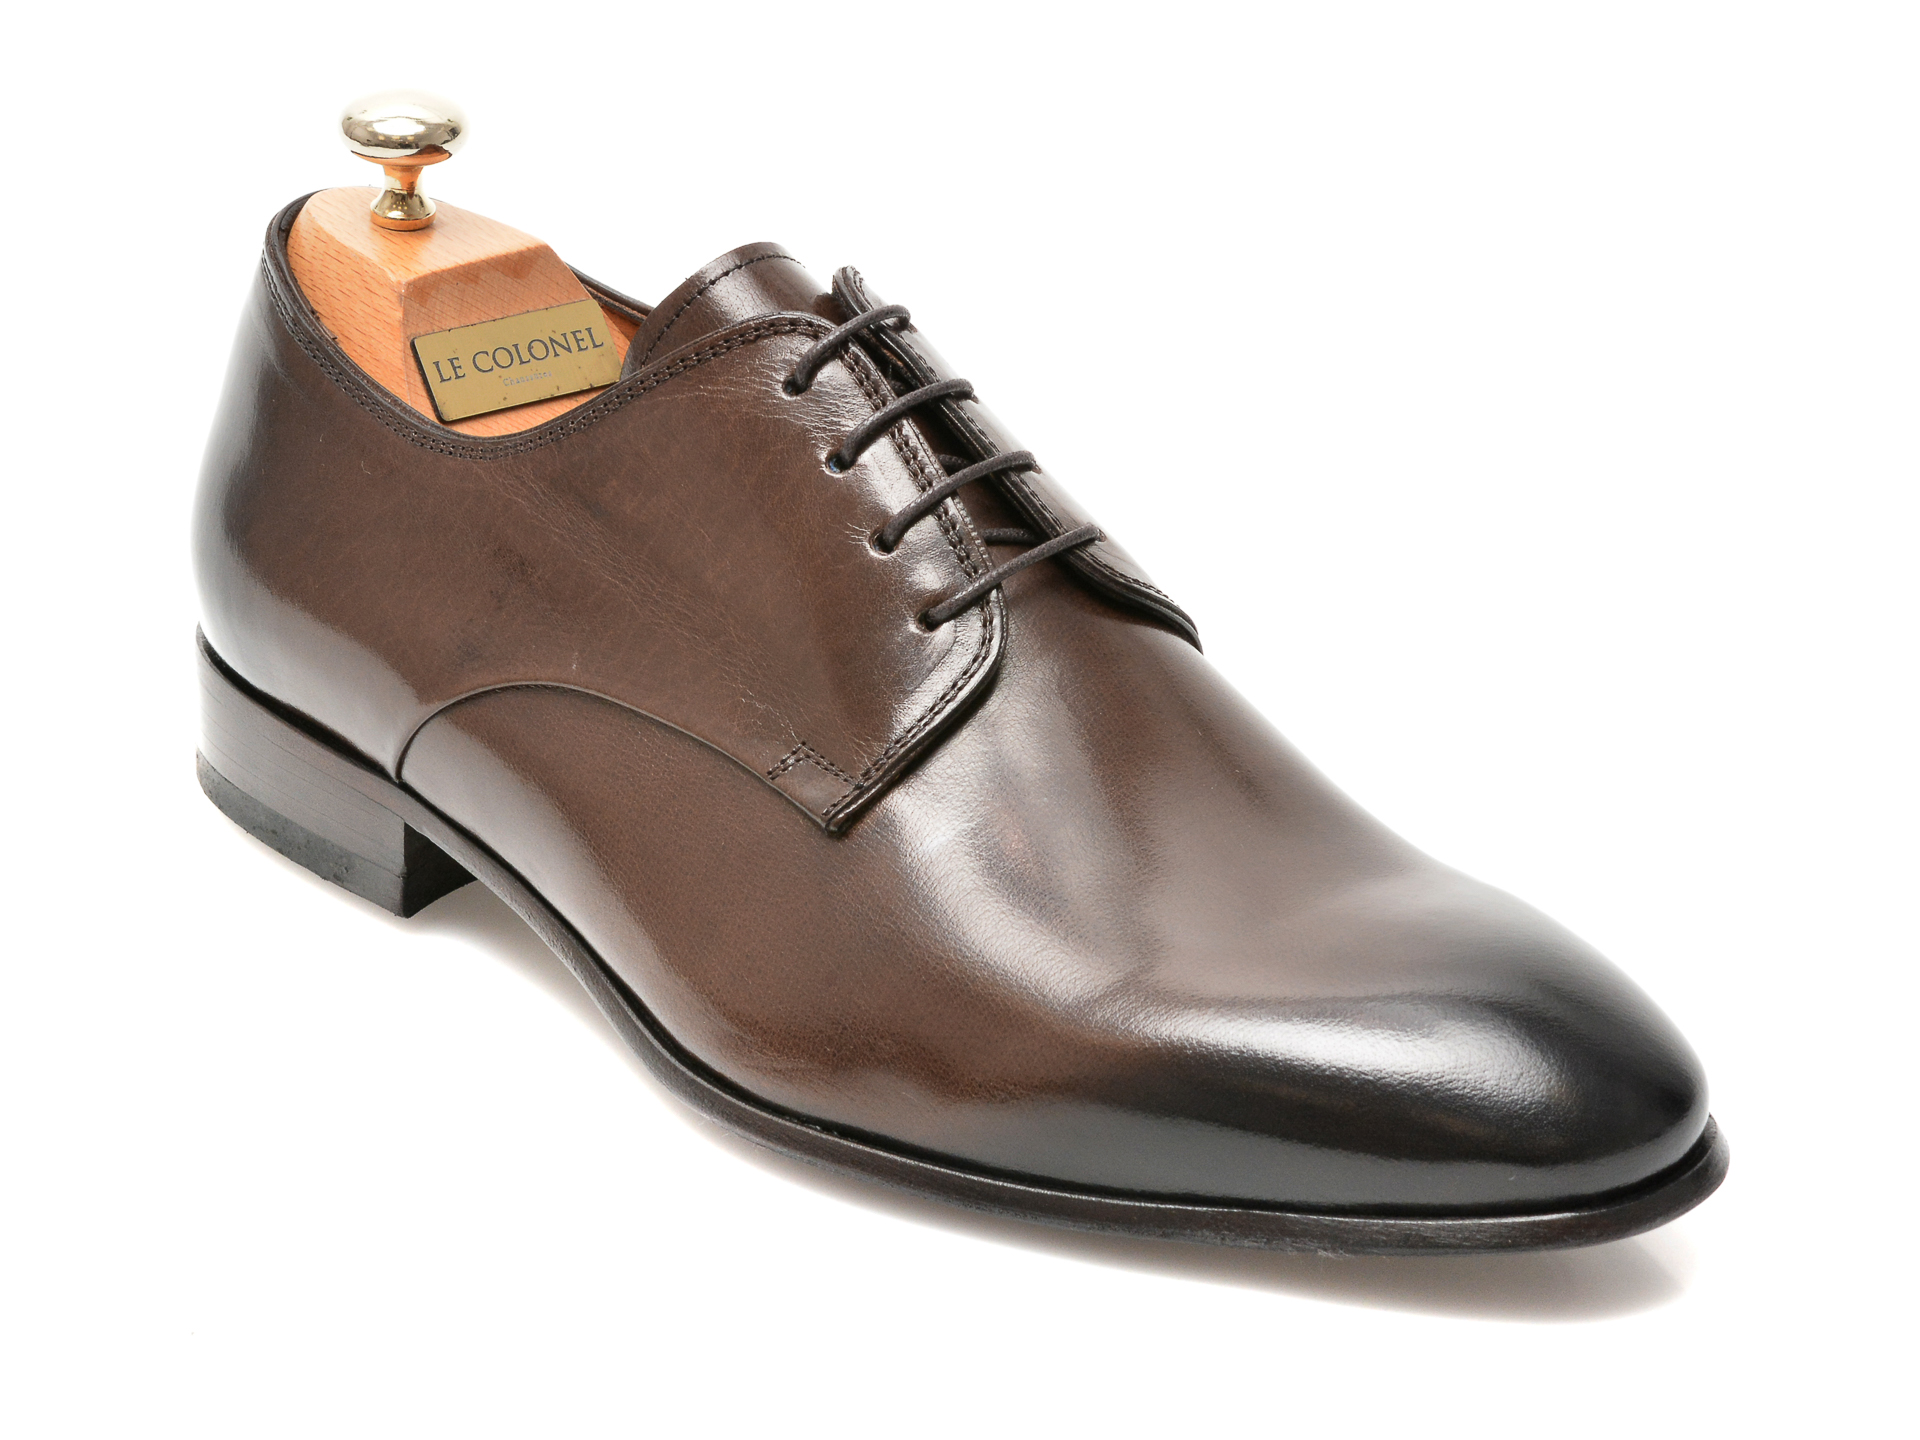 Pantofi LE COLONEL maro, 49817, din piele naturala imagine reduceri black friday 2021 Le Colonel